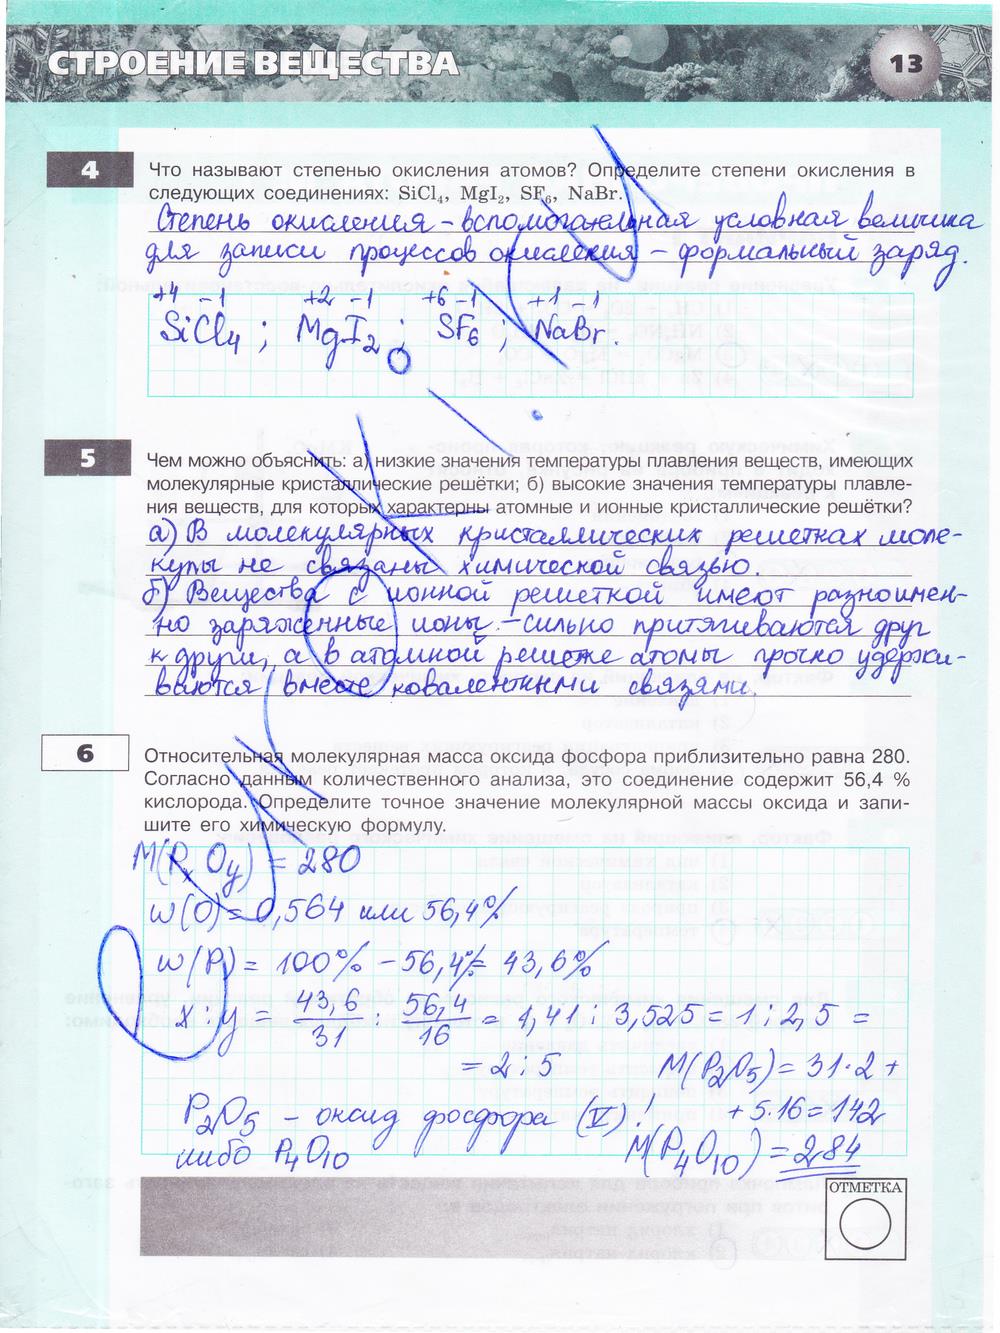 гдз 9 класс тетрадь-экзаменатор страница 13 химия Бобылева, Бирюлина